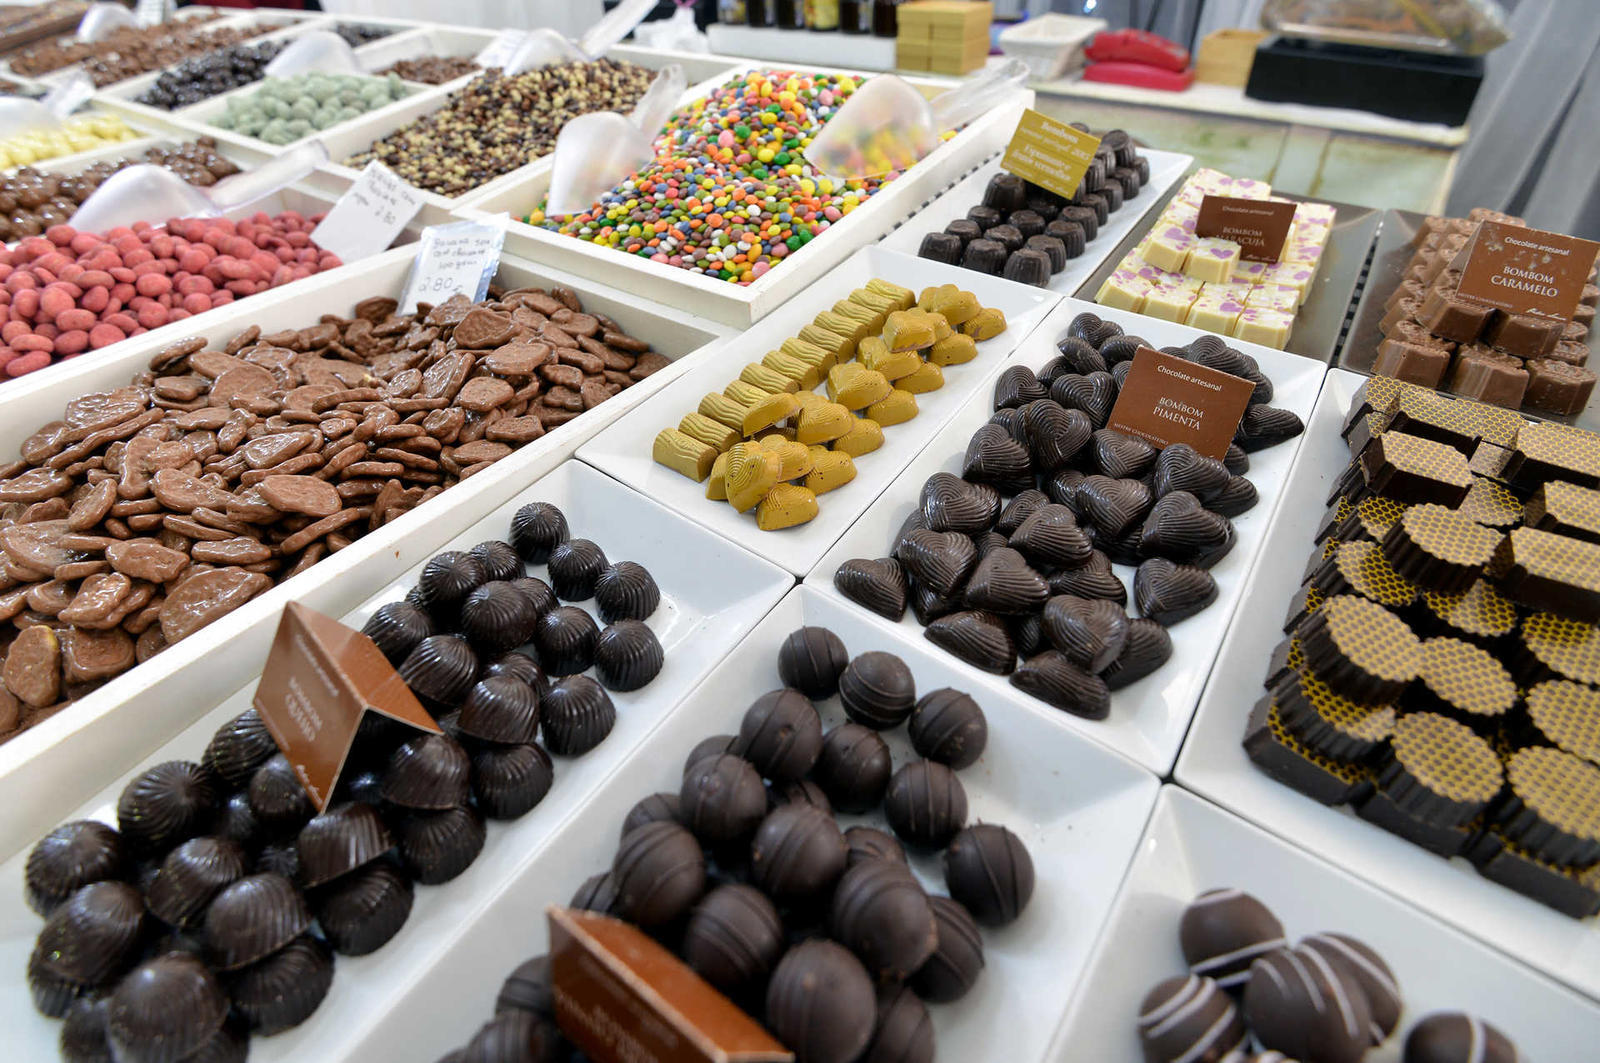 Festa do Chocolate em Matosinhos